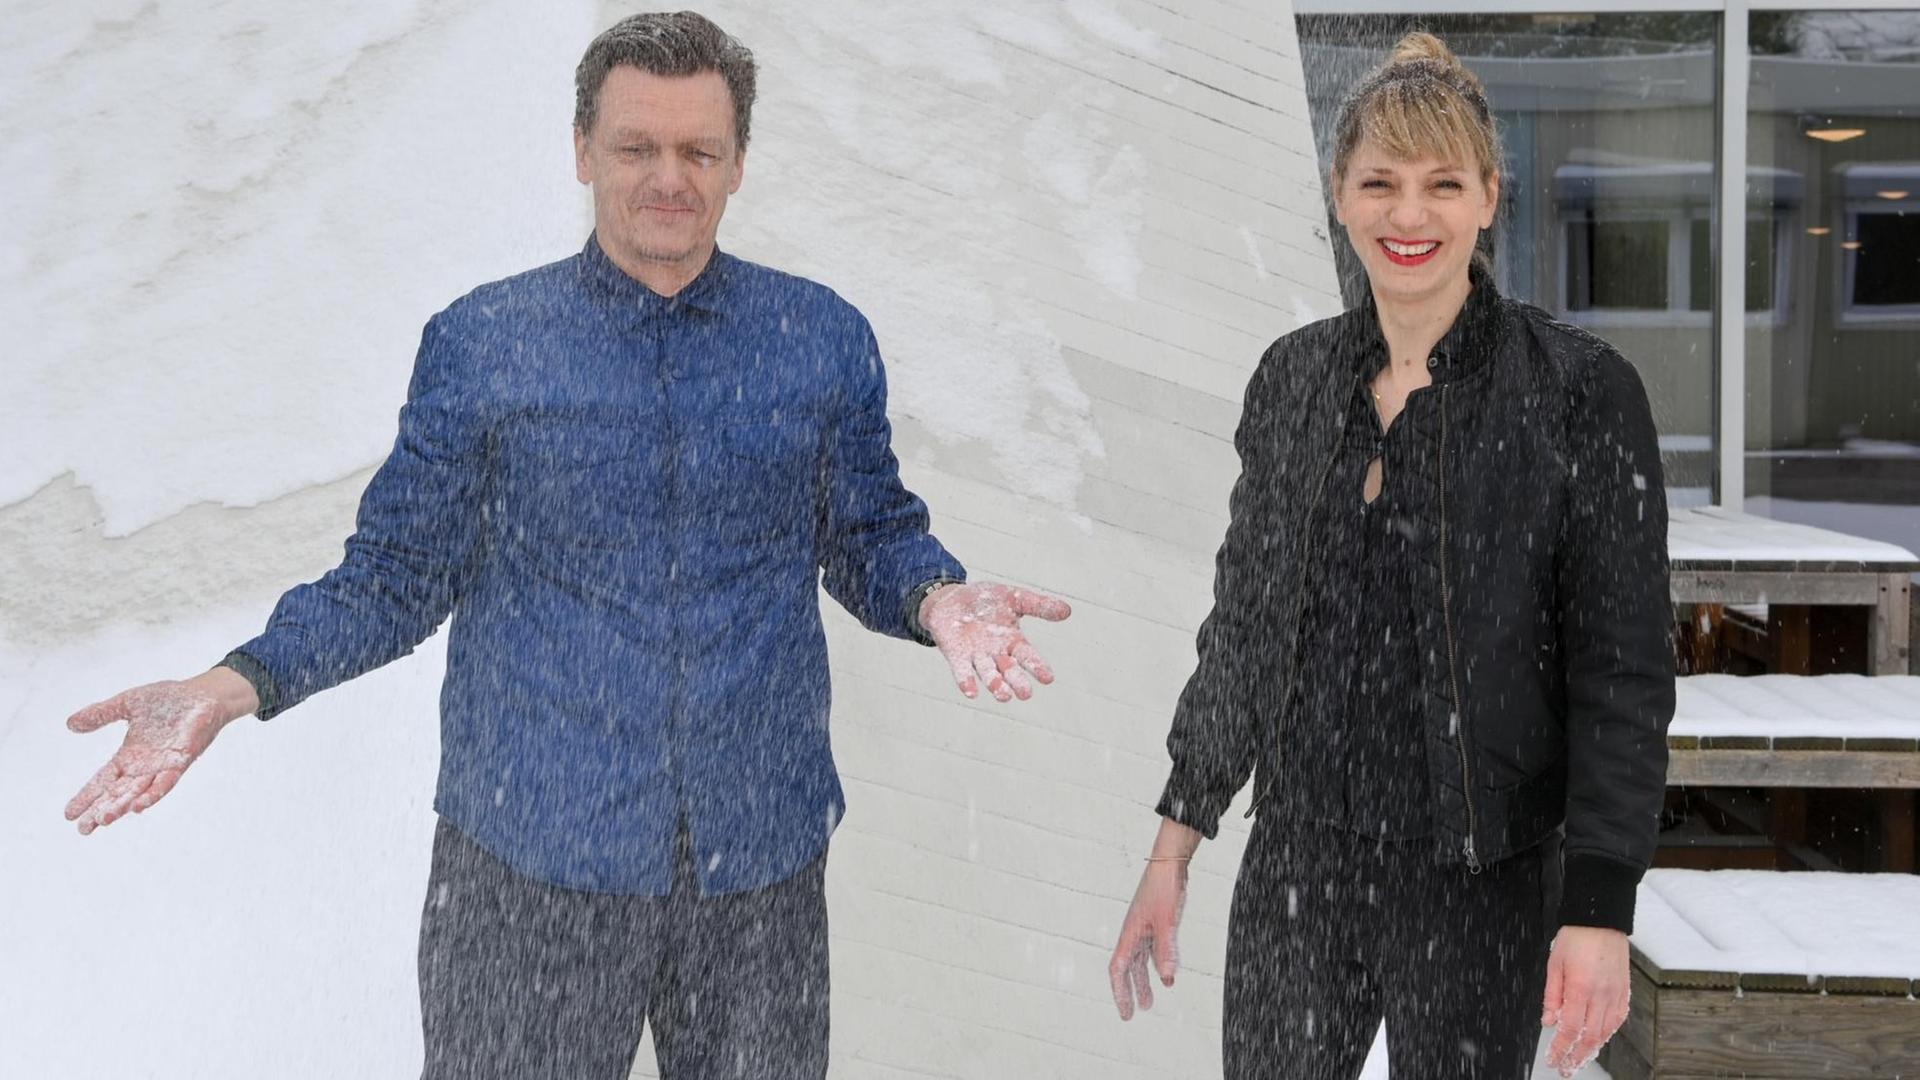 Thomas Oberender, Intendant der Berliner Festspiele, und Yvonne Büdenhölzer, Leiterin des Theatertreffens, stehen im Schnee vor dem Haus der Kulturen der Welt.